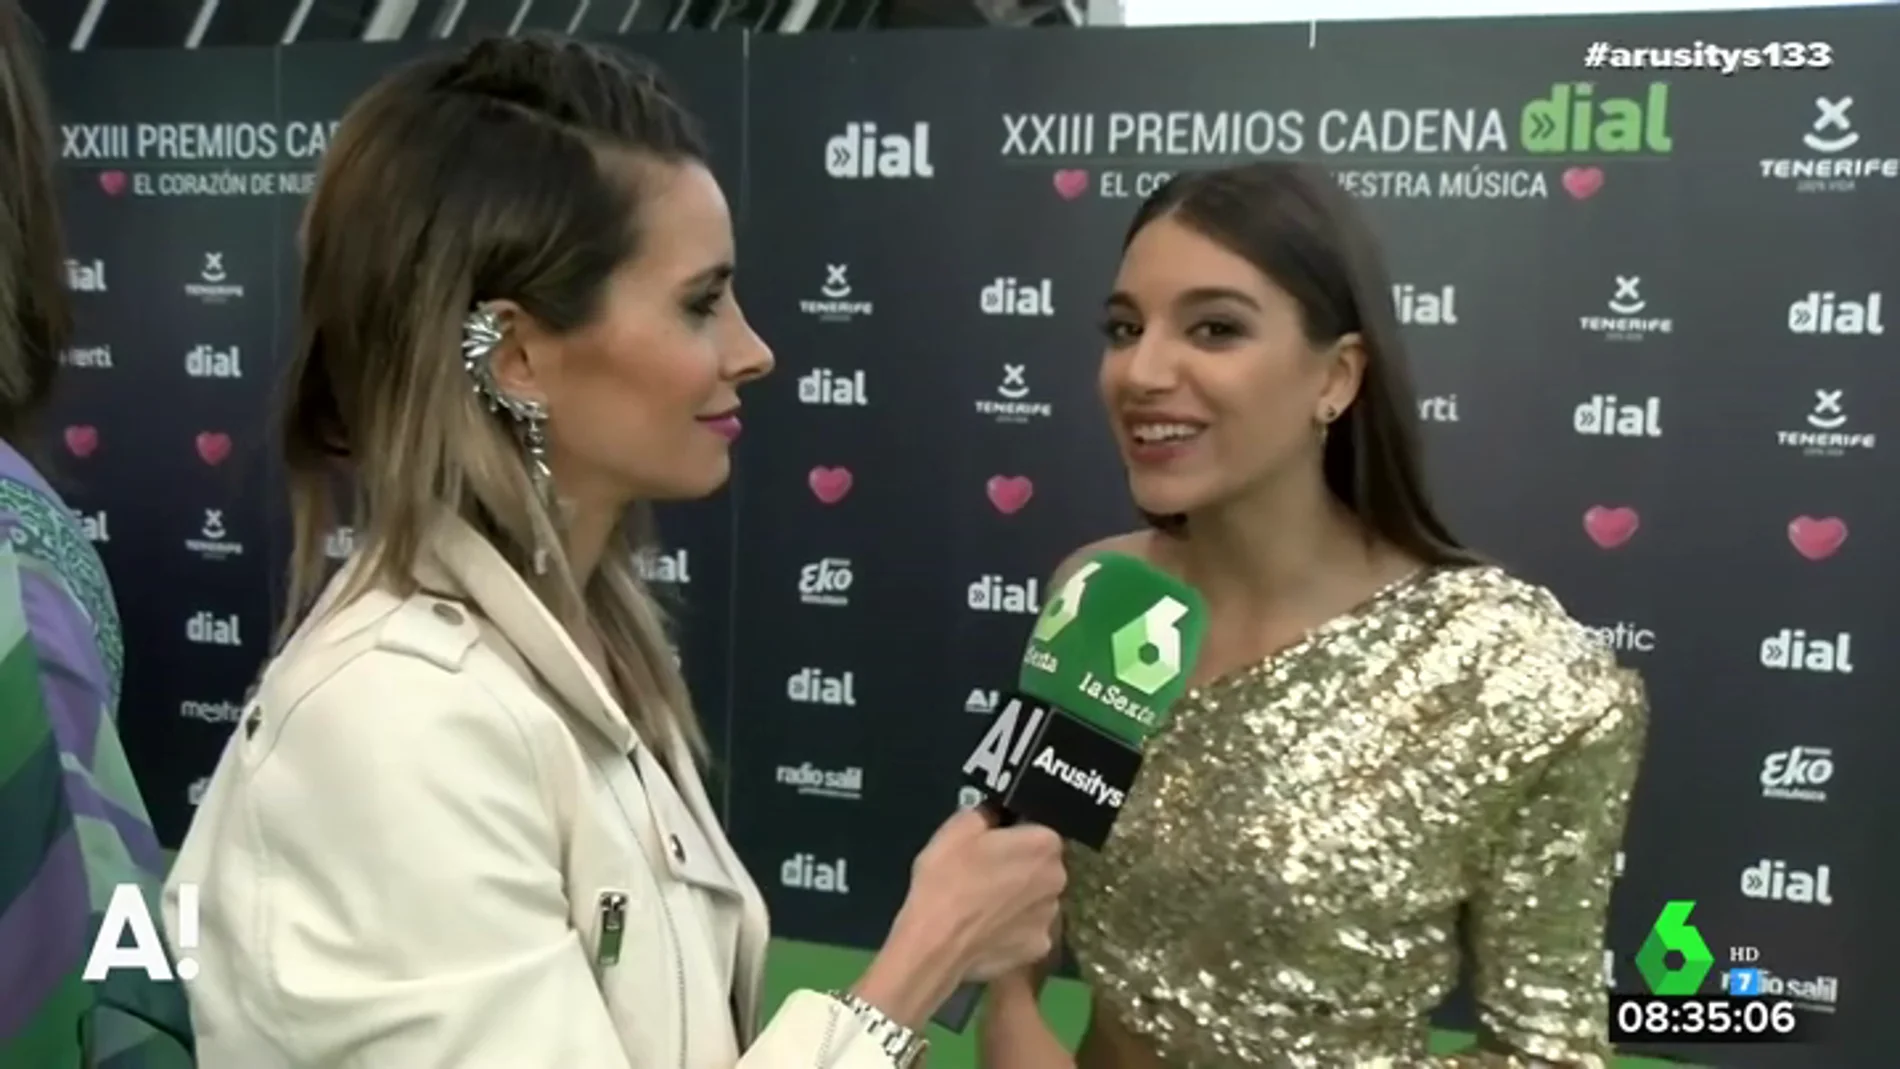 El grito de Ana Guerra en los Premios Cadena Dial: "Qué vivan las mujeres"